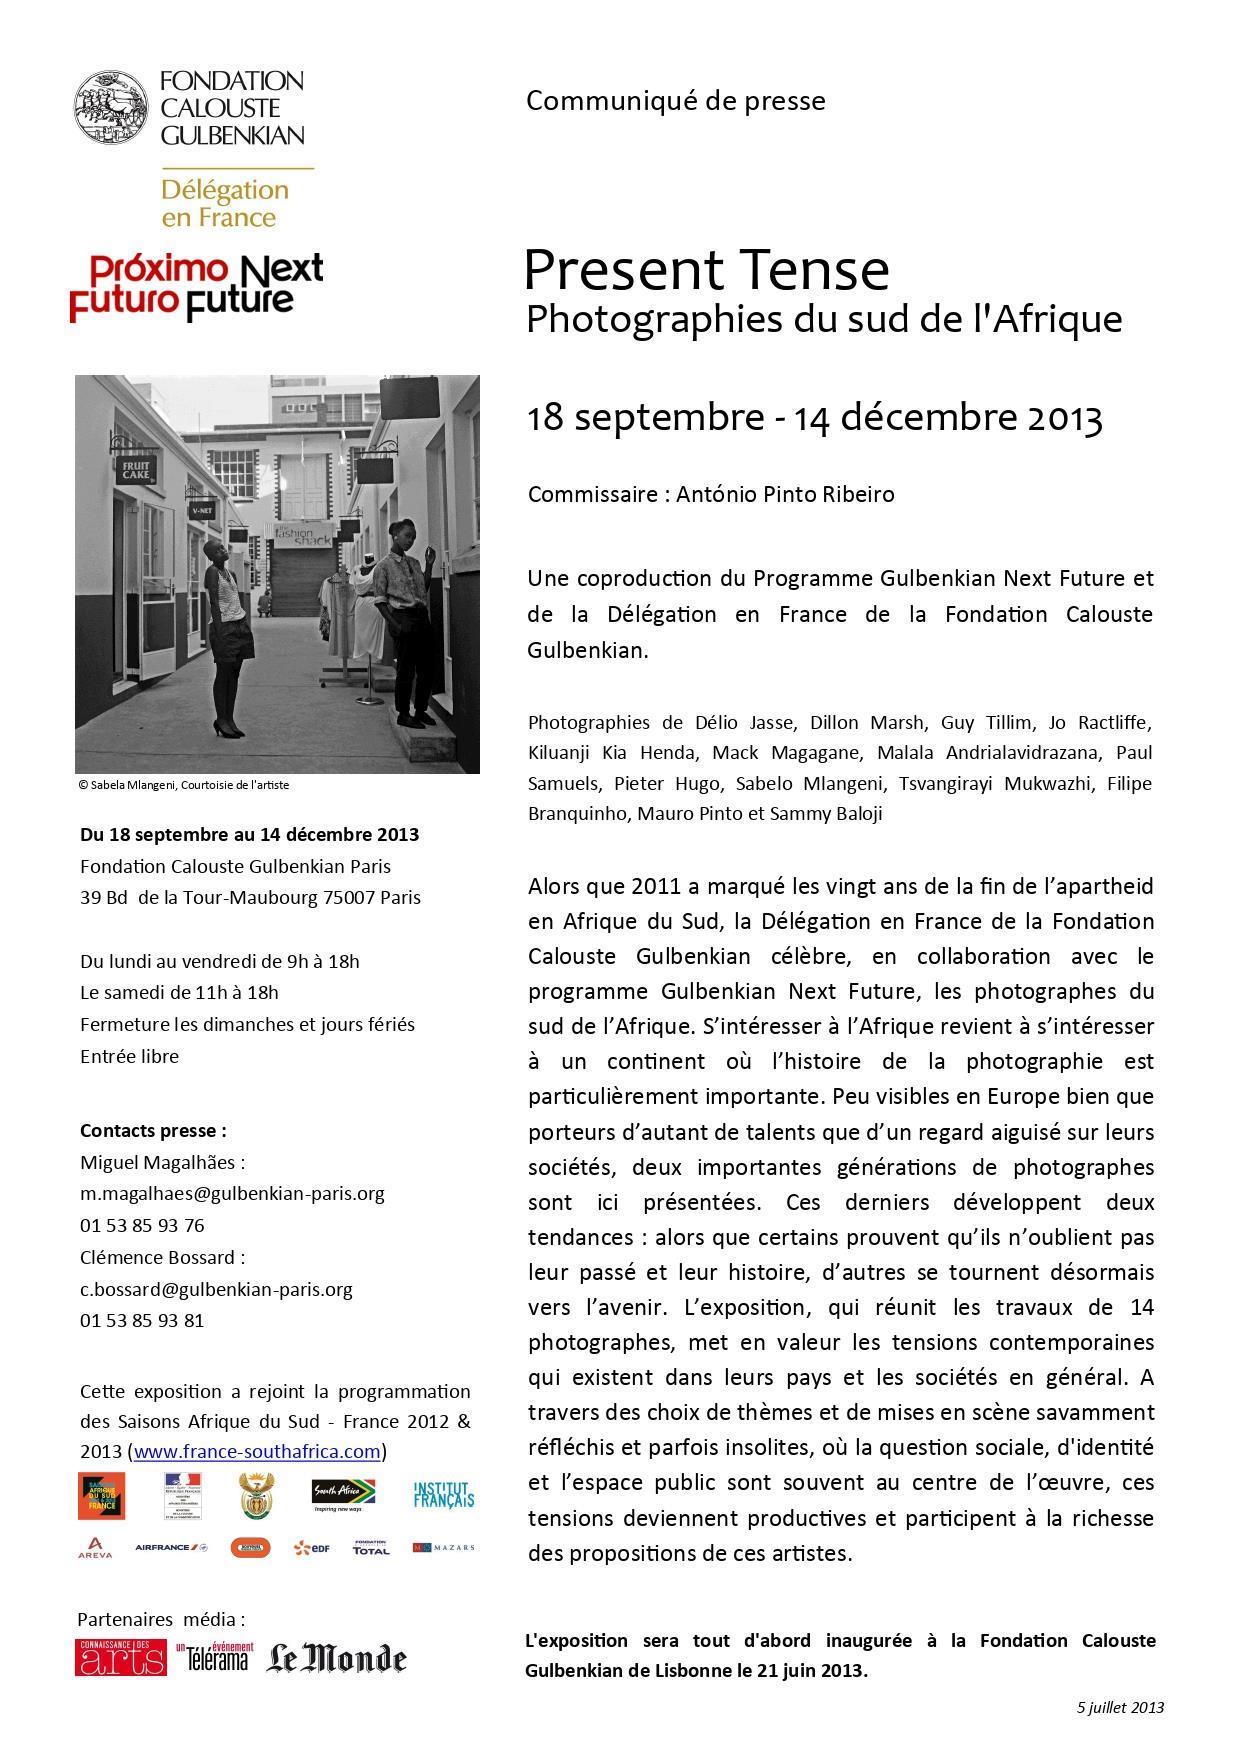 Fundação Calouste Gulbenkian / Delegação em França